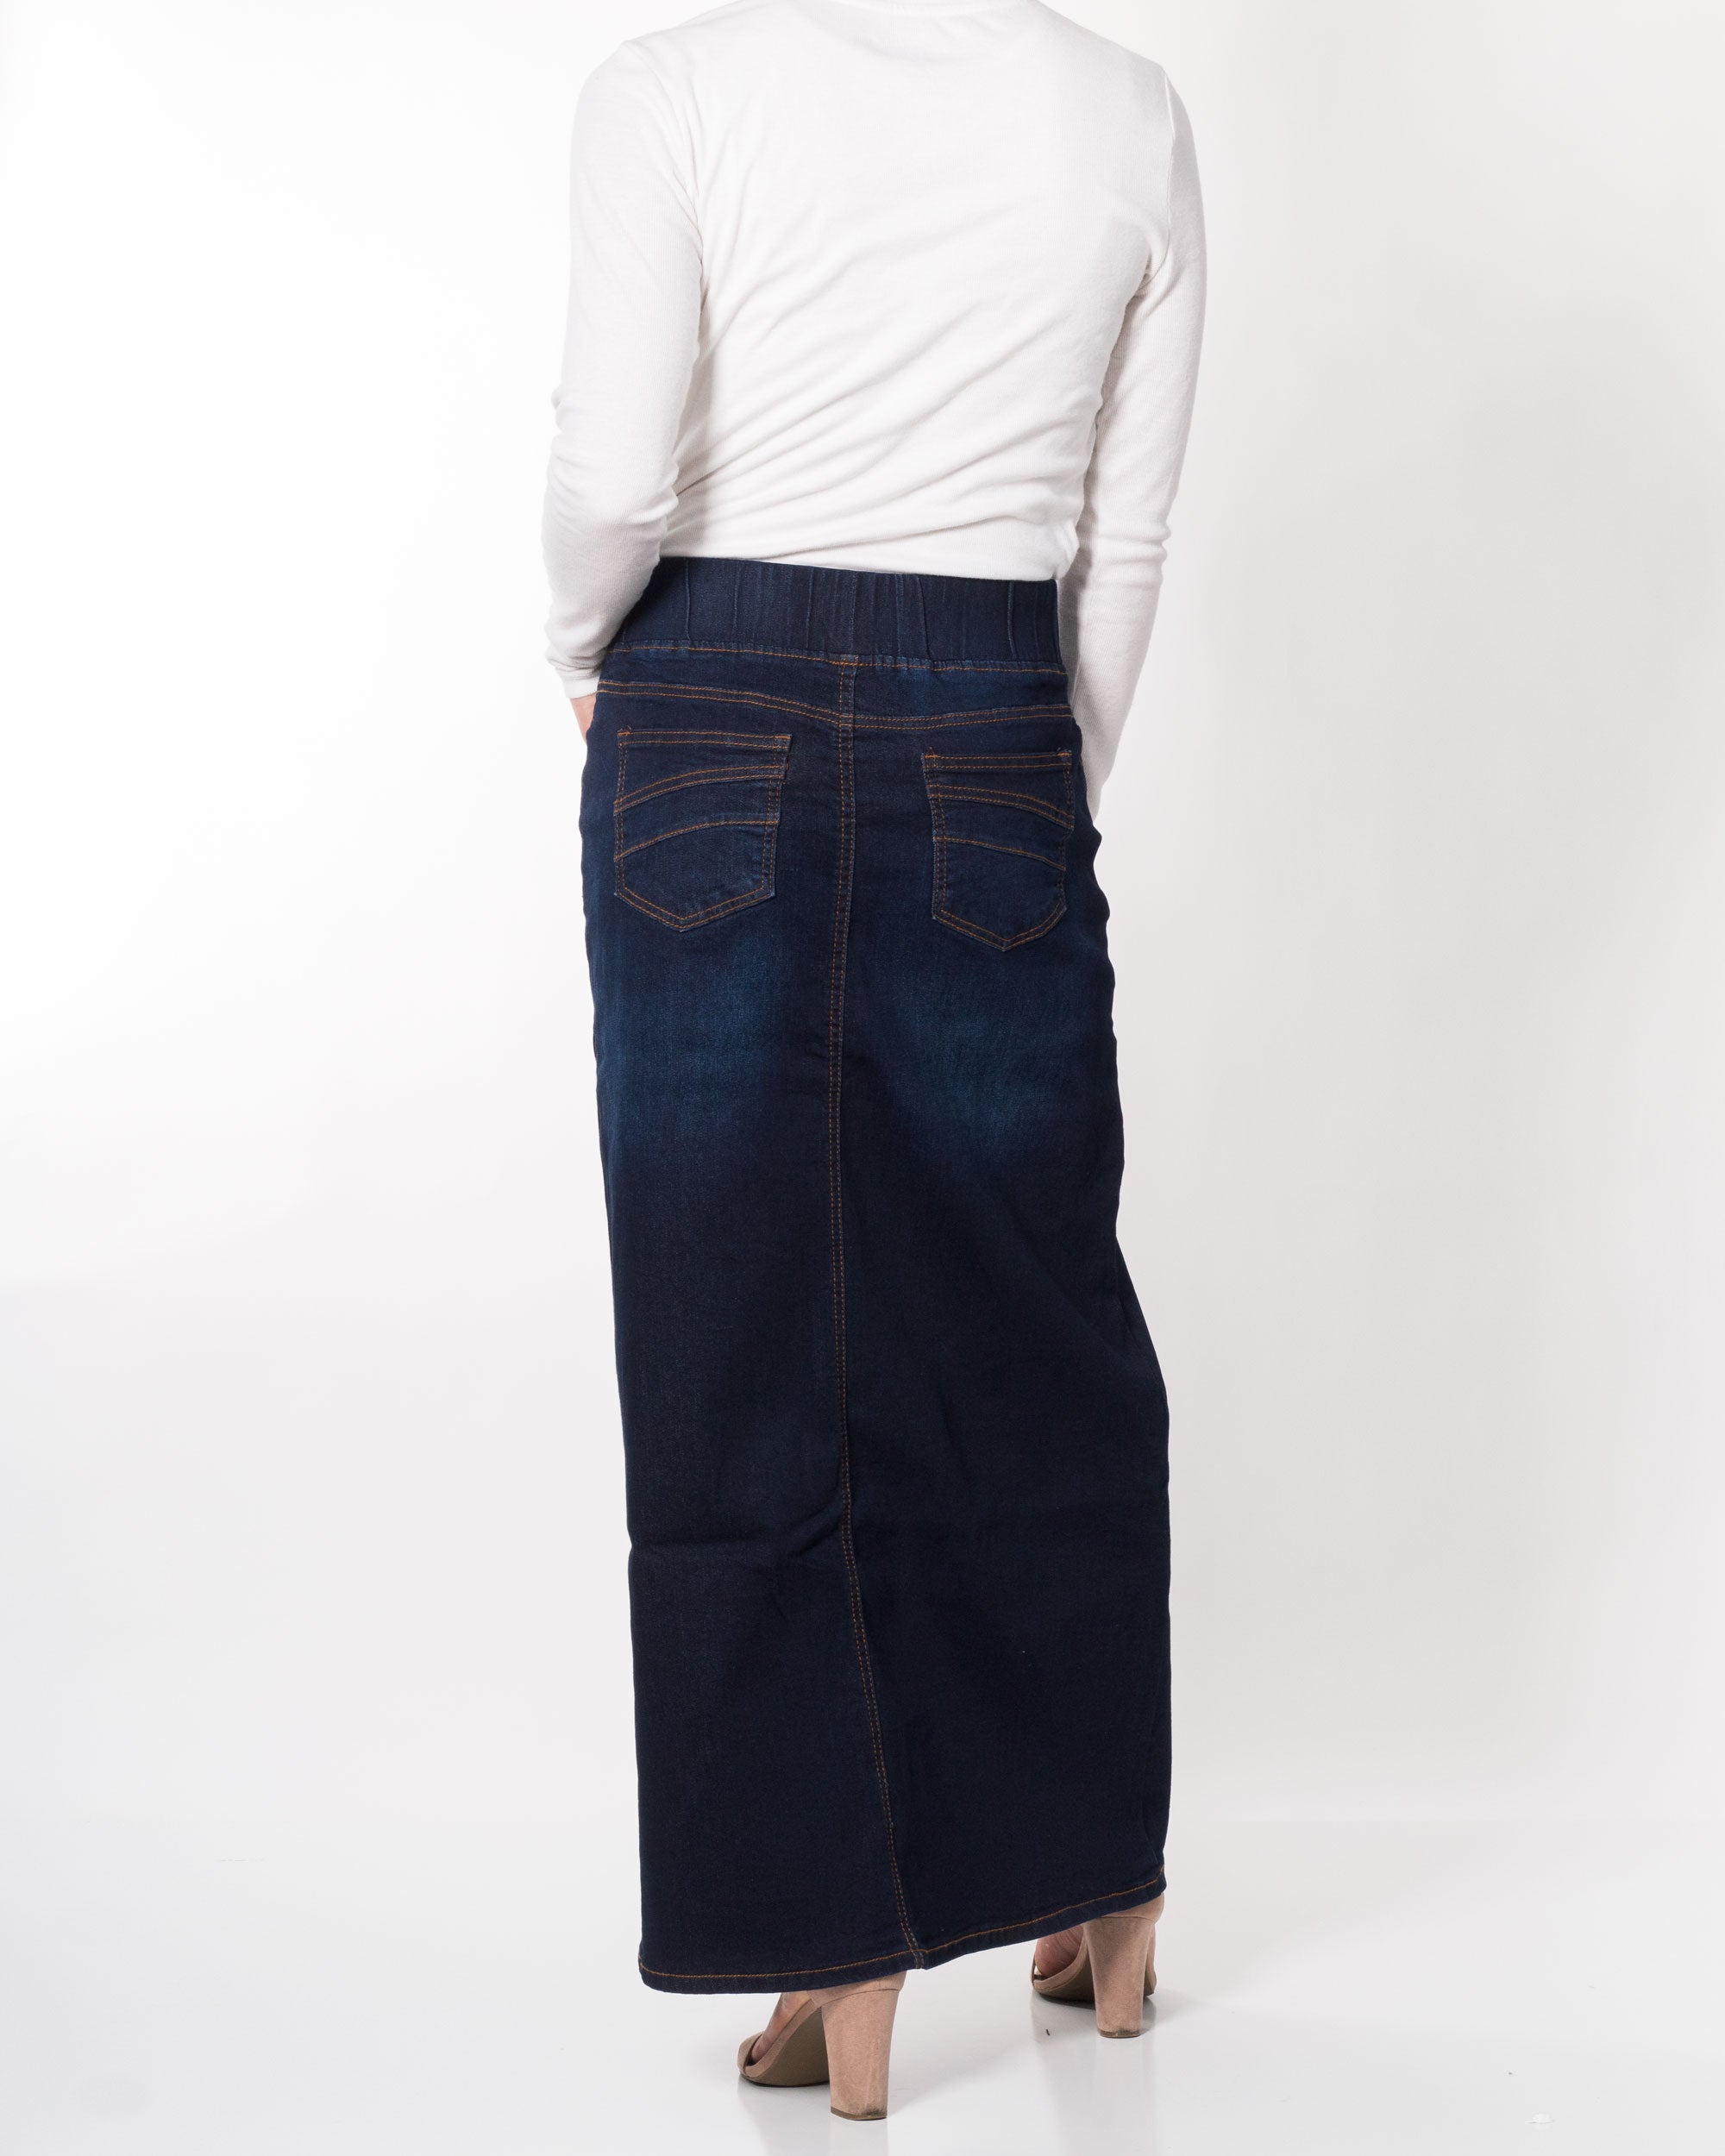 Ava's Maxi Denim Skirt